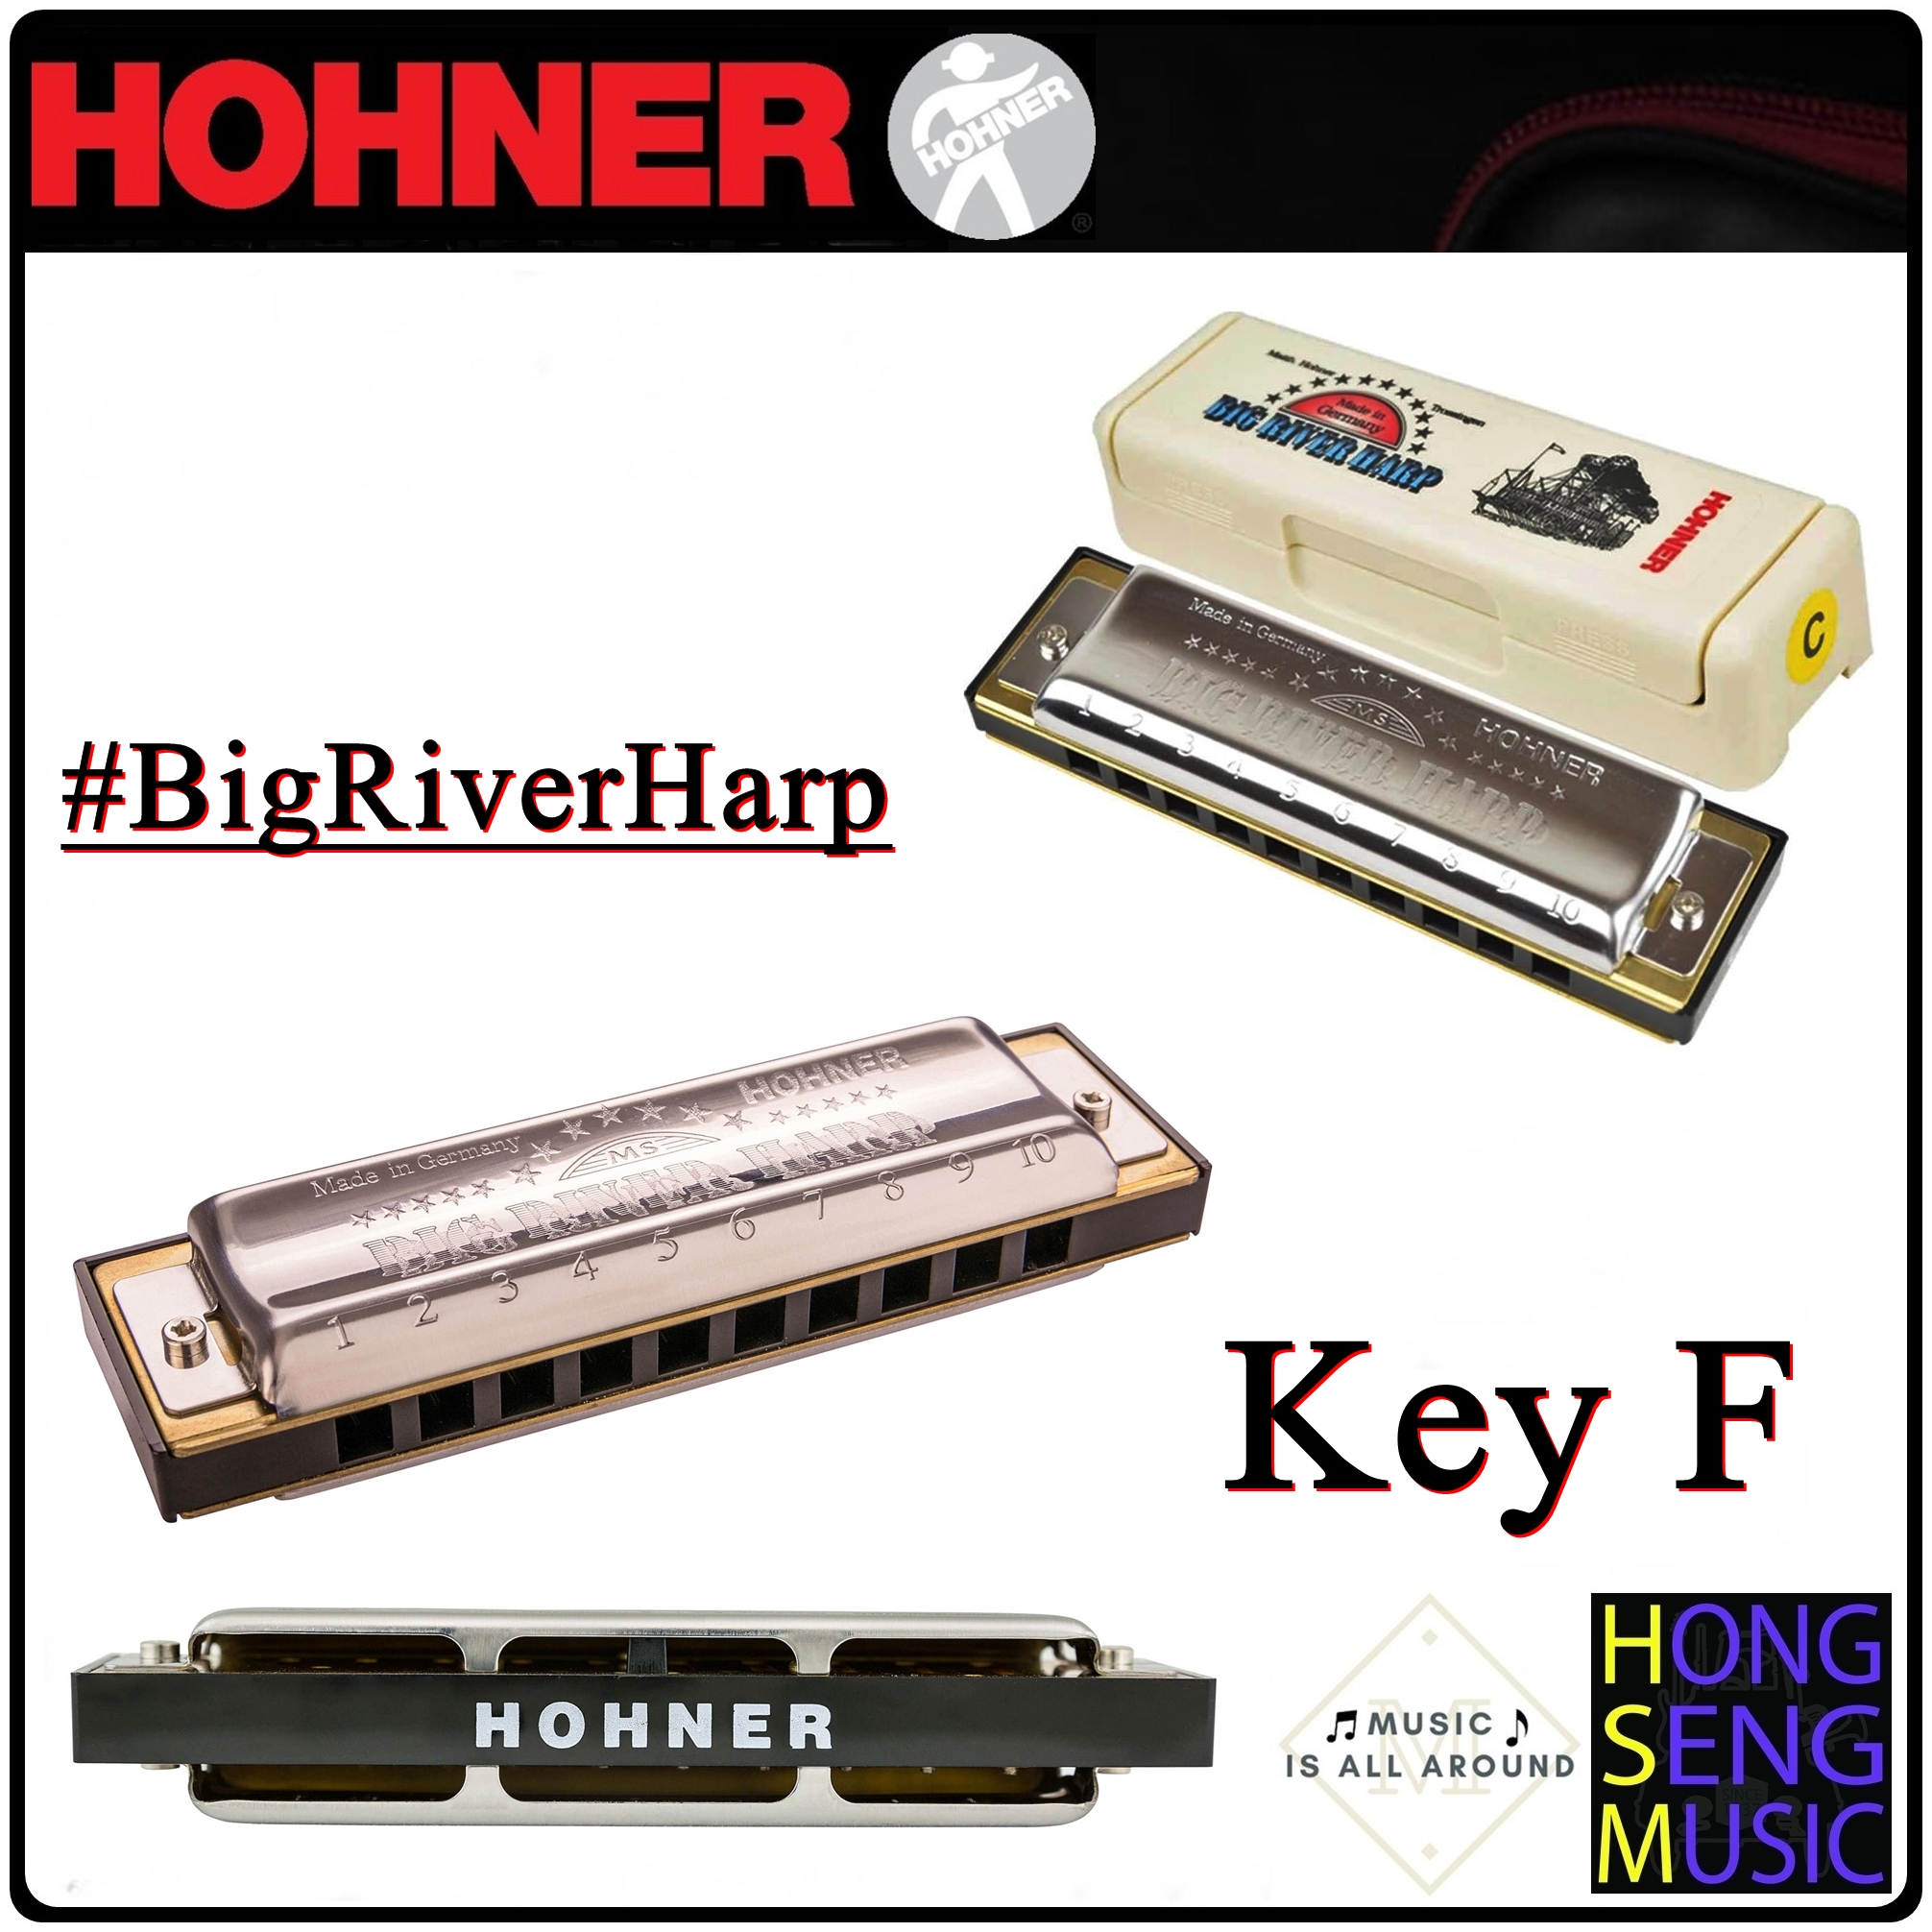 ฮาร์โมนิก้า (เม้าท์ออร์แกน) Hohner รุ่น Big River Harp Harmonica 590 Key F